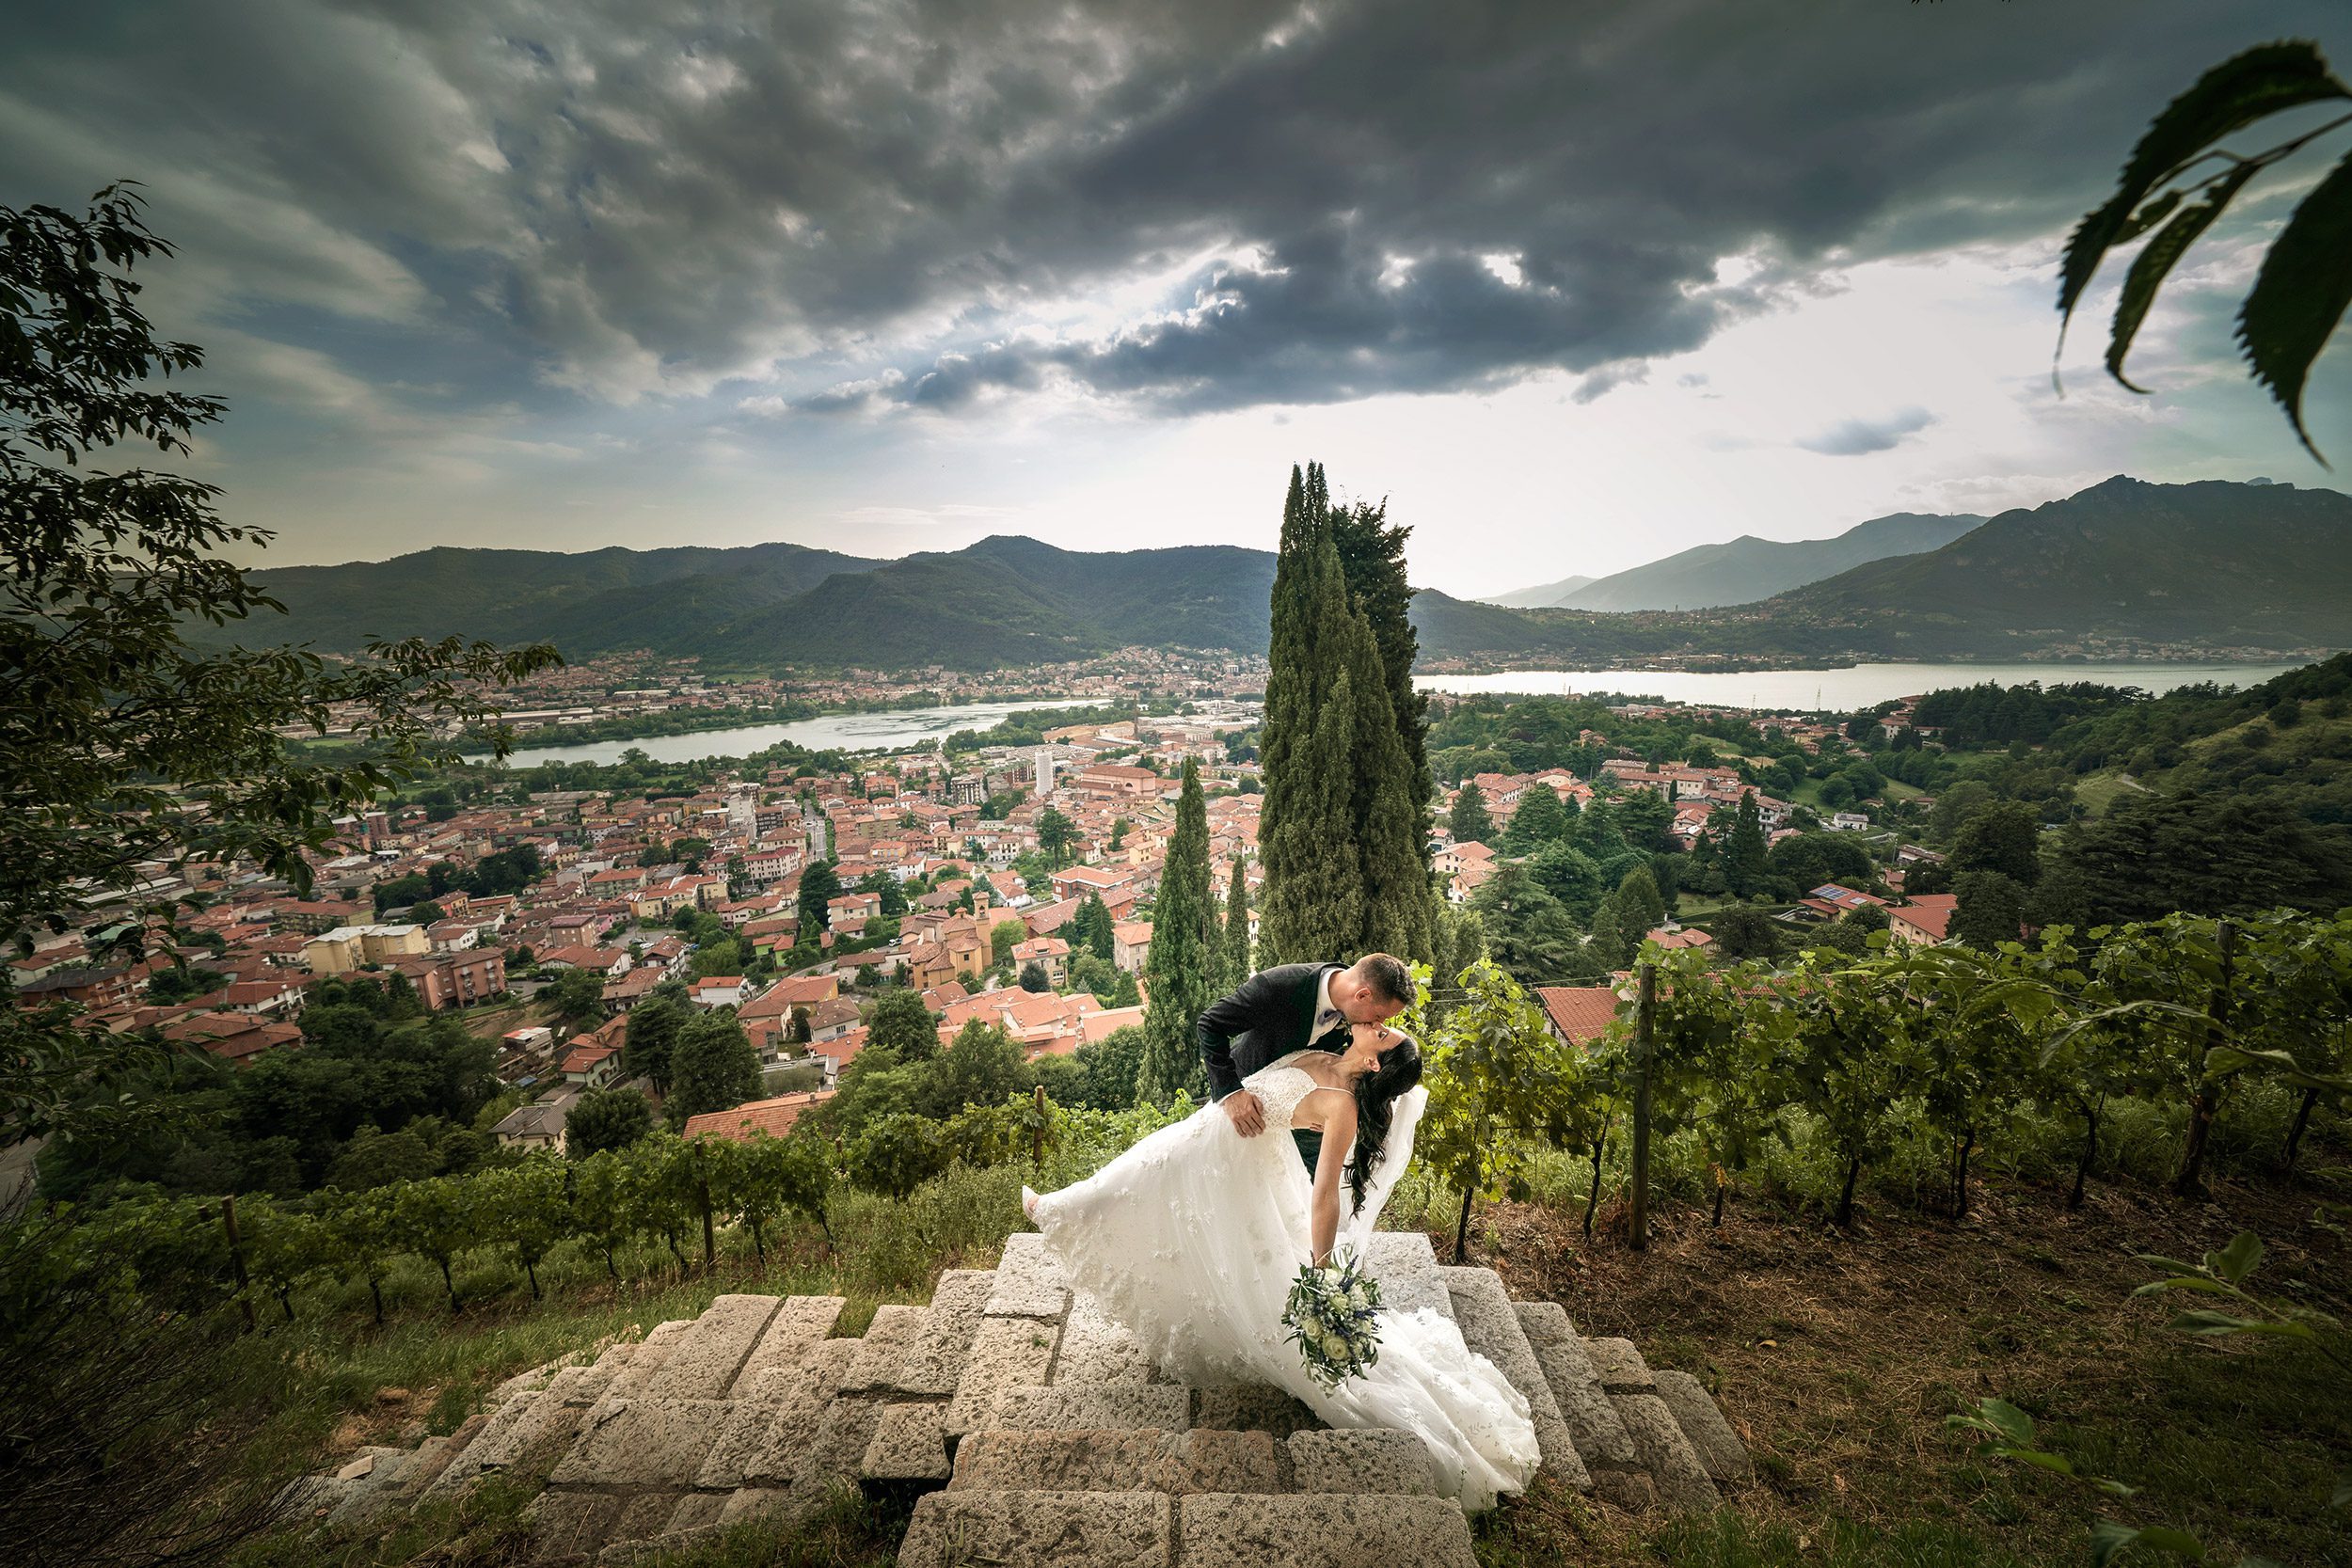 000 reportage wedding sposi foto matrimonio castello rossino lecco vista lago como 1